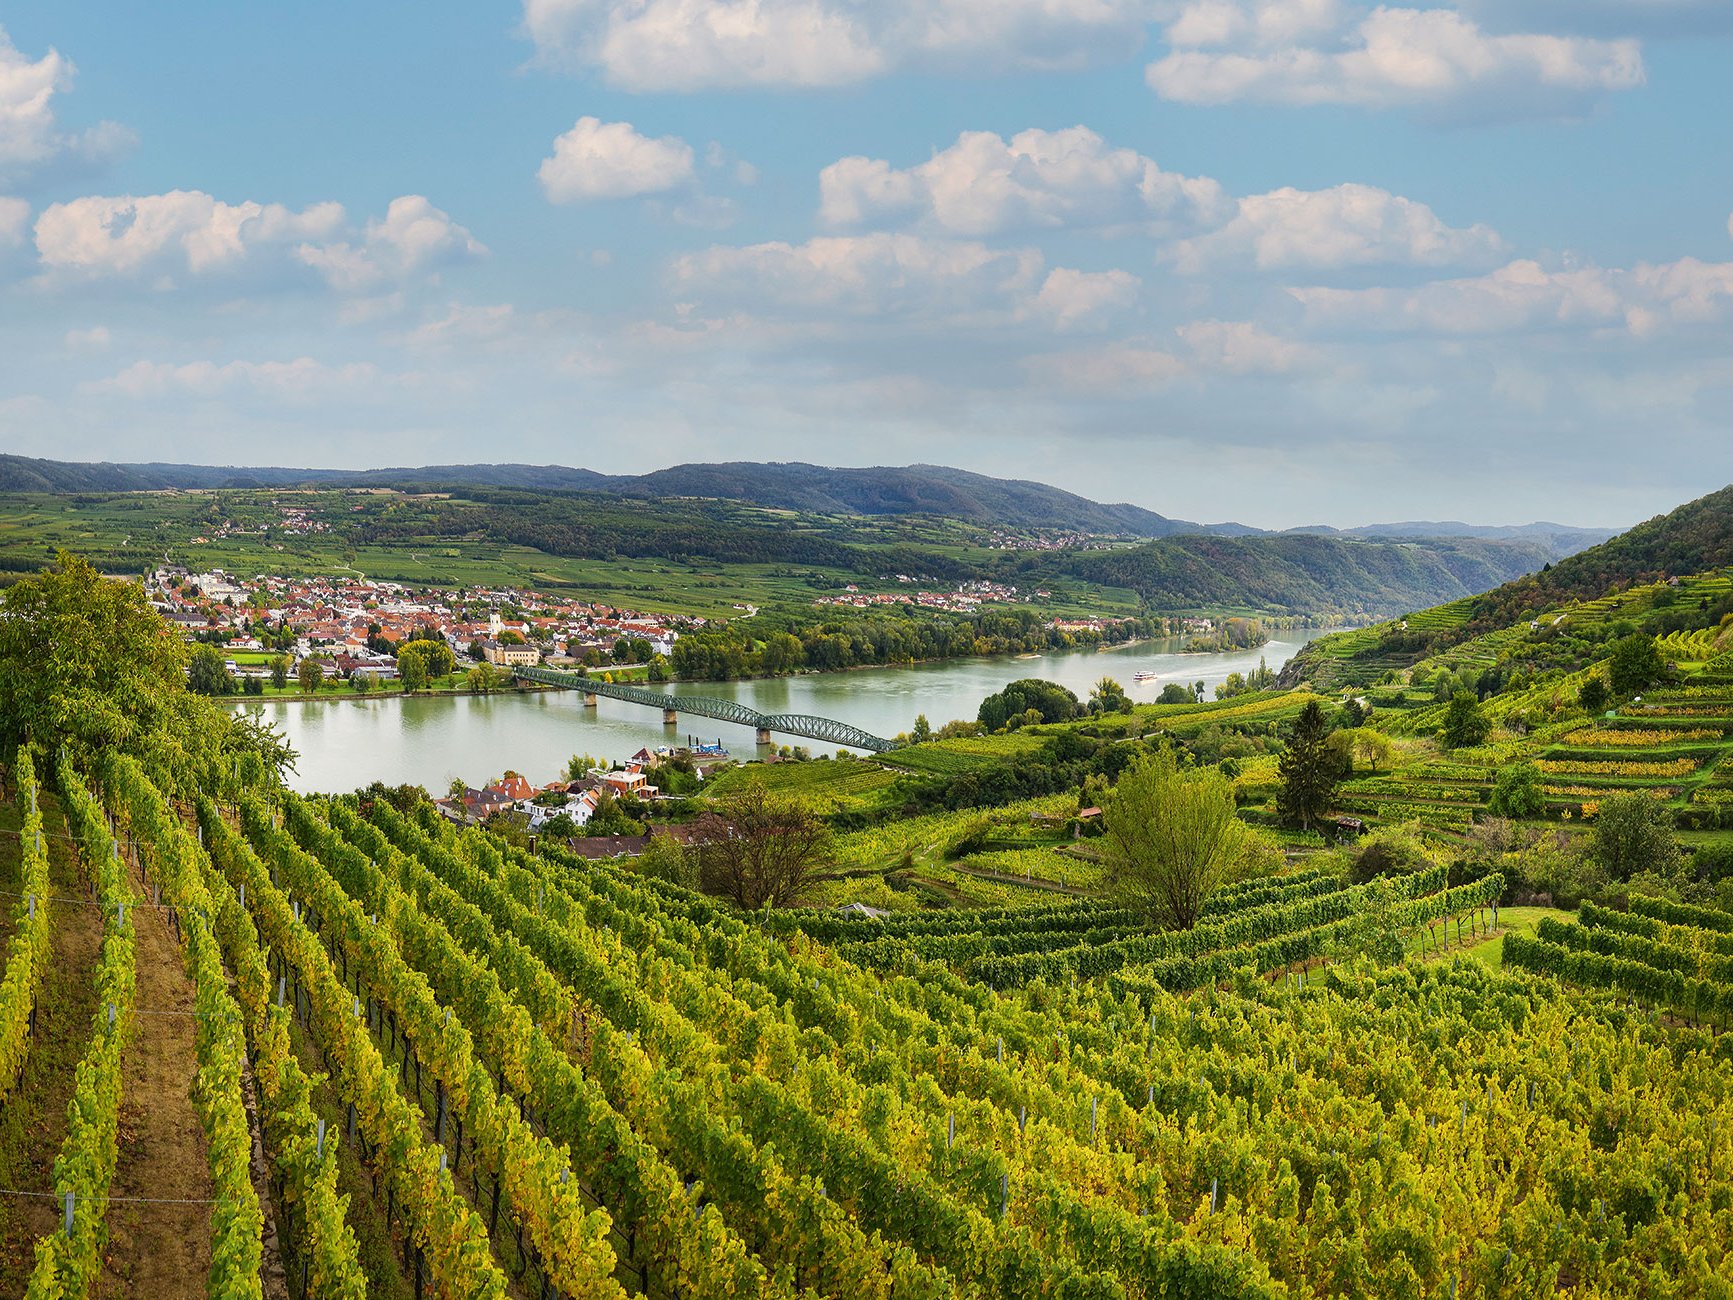 Blick von der bekannten Rieslinglage Ried Grillenparz in Stein an der Donau in das Donautal und auf Mautern.